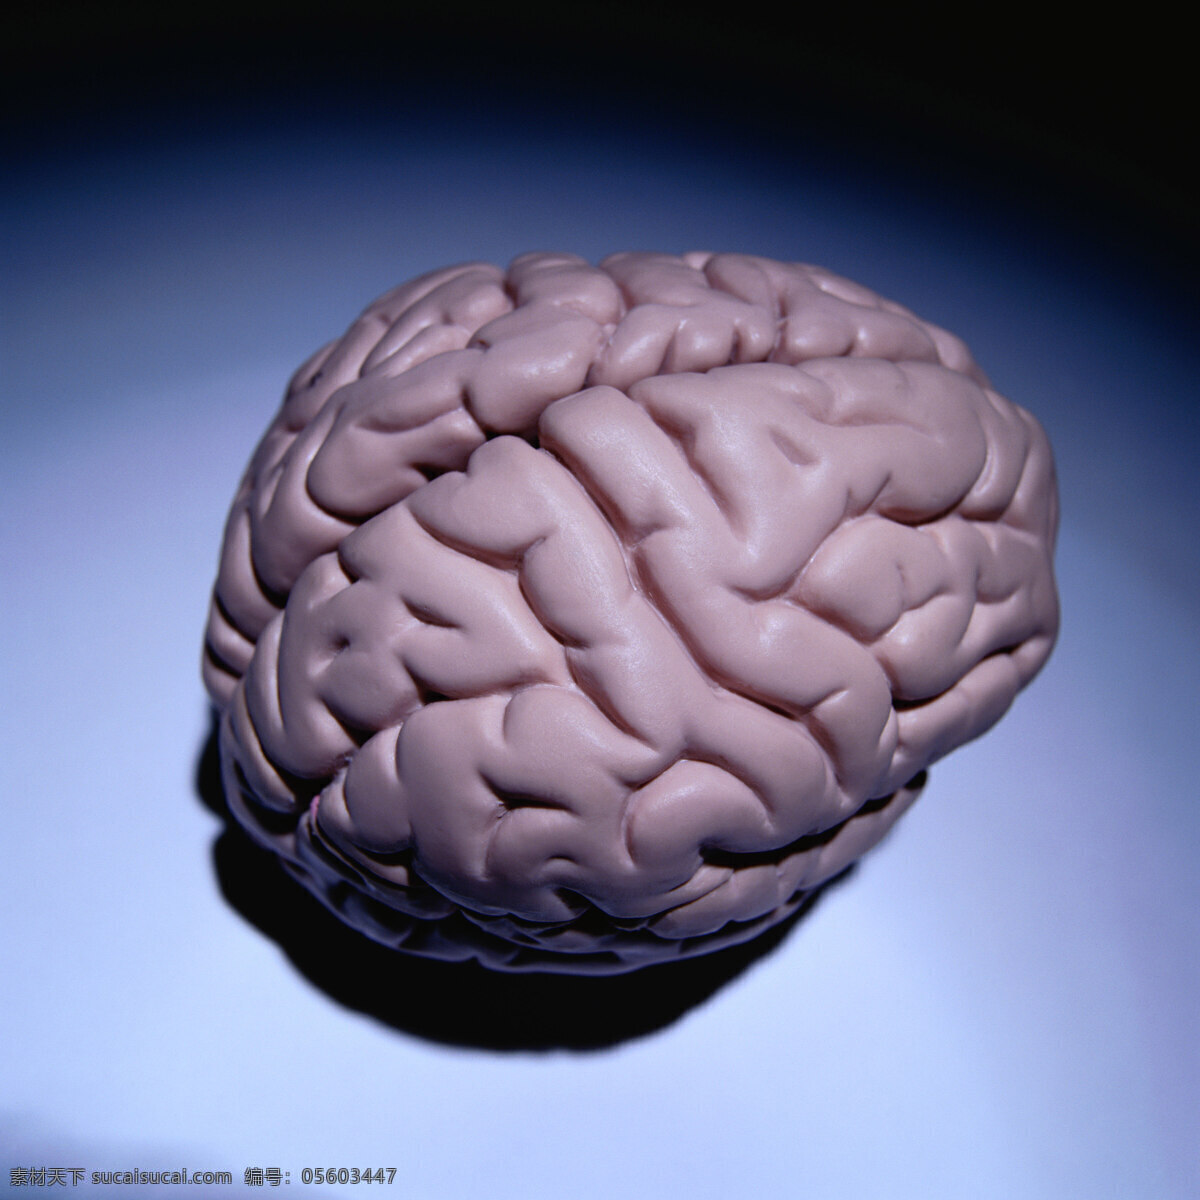 医疗保健 技术 科学免费下载 人体 大脑 图 层 图示 大脑图 人脑图 医院医疗